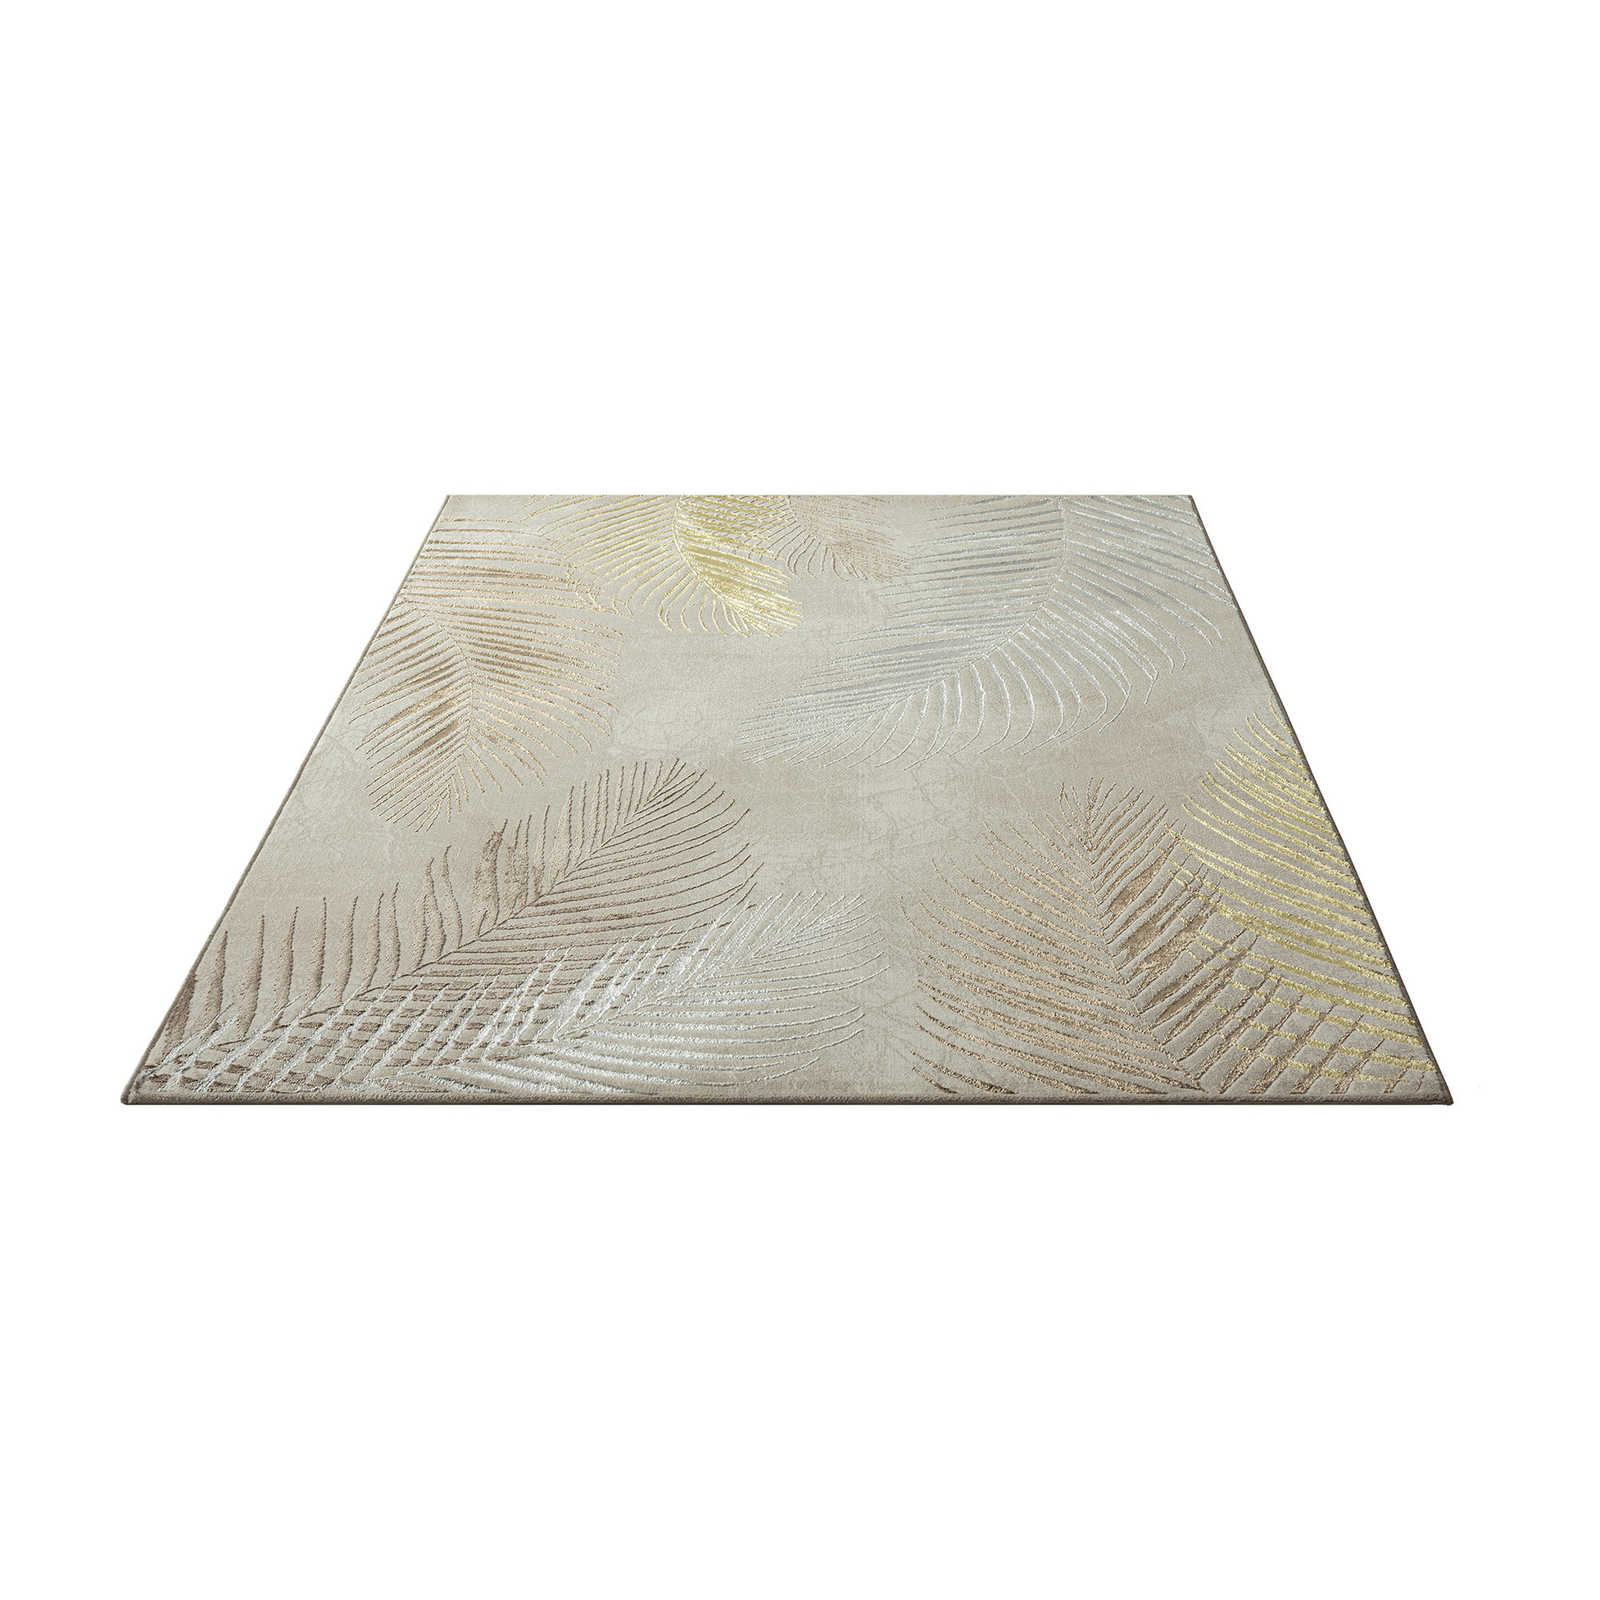 zacht crèmekleurig hoogpolig tapijt - 290 x 200 cm
